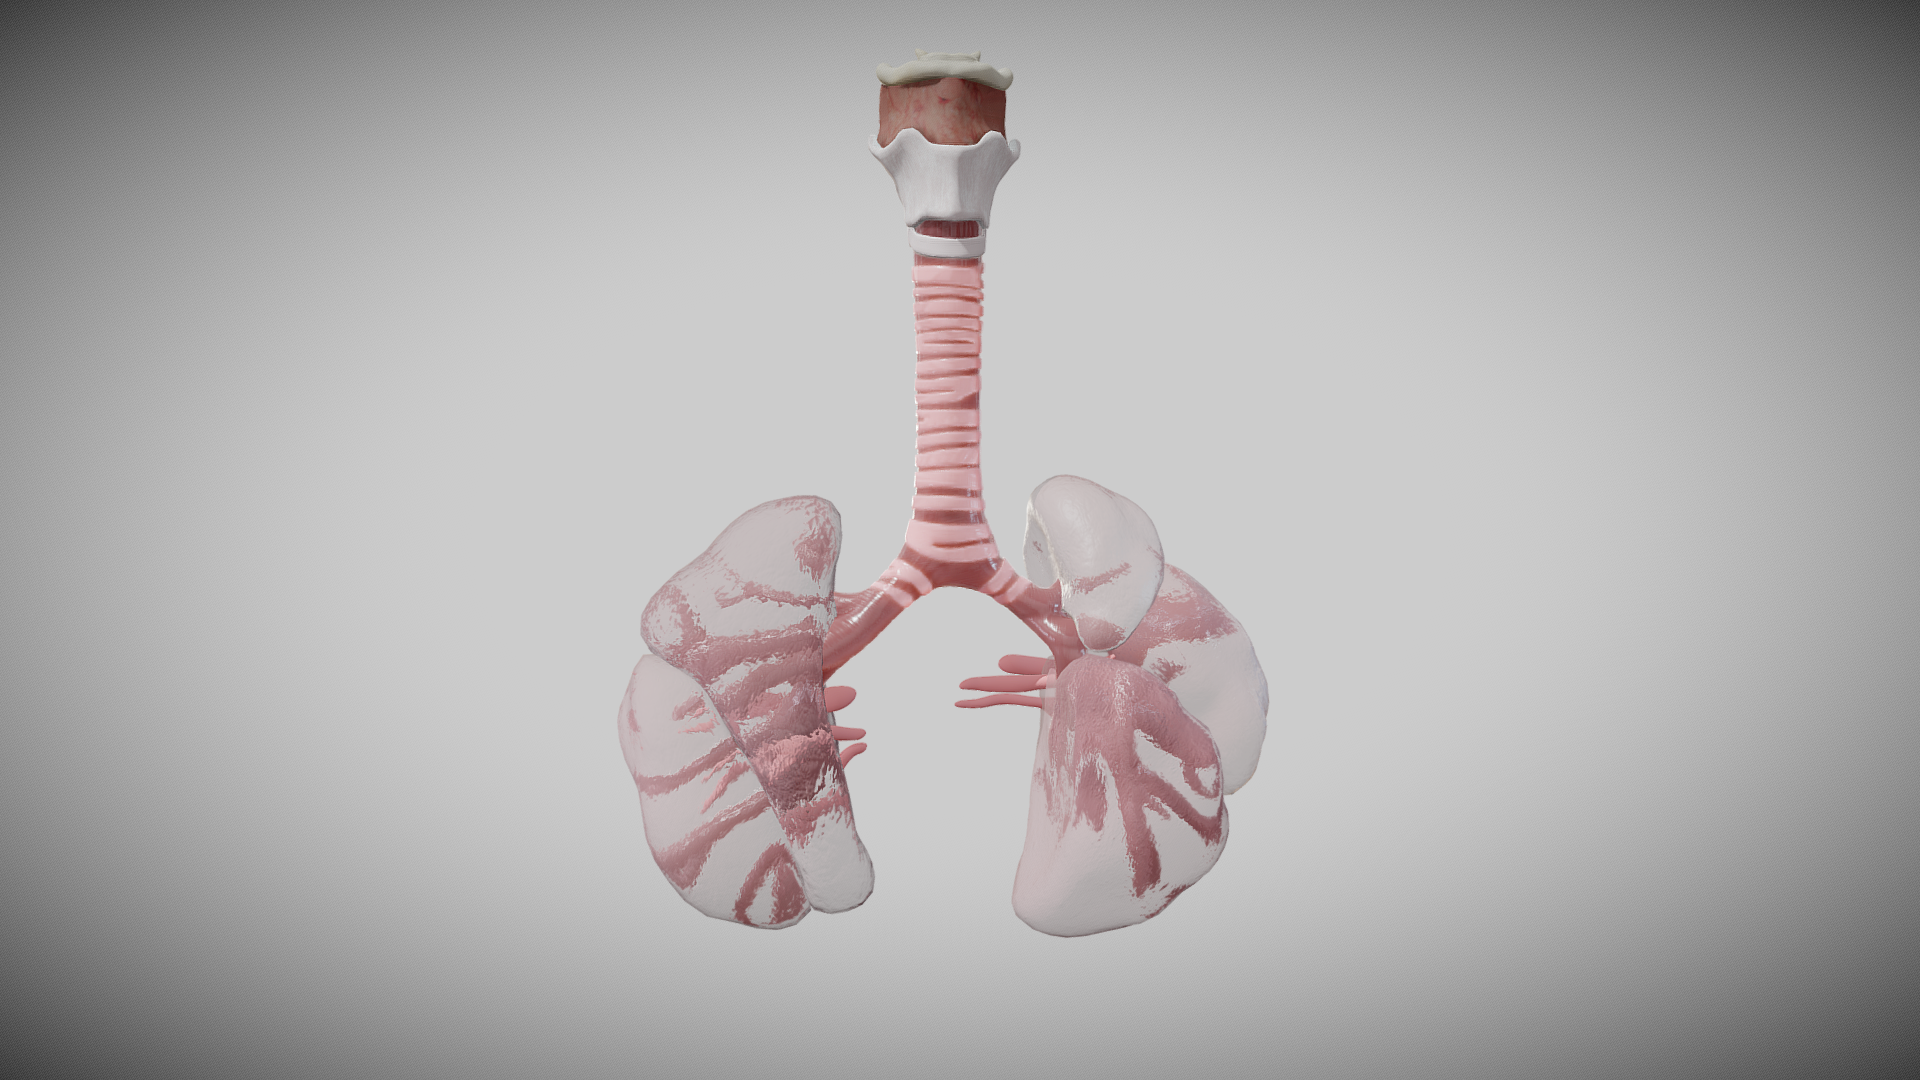 16 week fetal pulmonary system